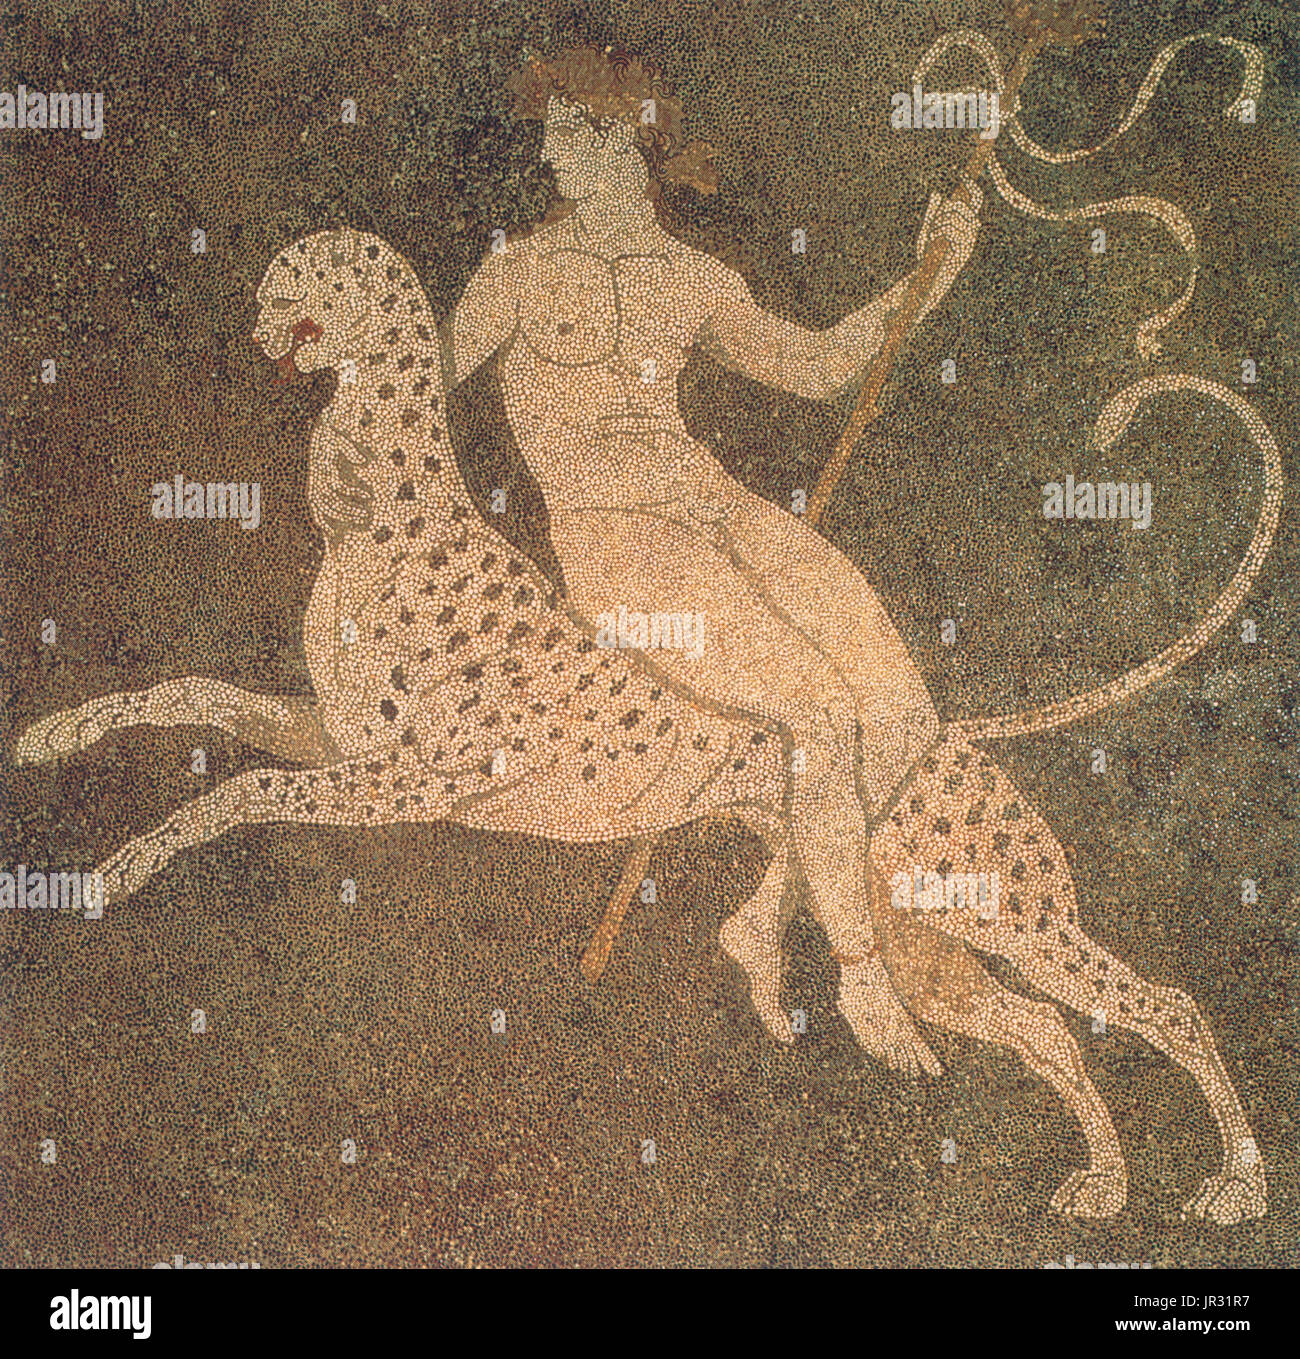 Dionysos a cavallo di un ghepardo, mosaico da una ricca casa della fine del IV secolo A.C. la " casa di Dionysos' a Pella, in Pella, la capitale del regno macedone. Dioniso è il dio della vendemmia e vinificazione e di vino, di rituale della pazzia, fertilità, teatro e religiosi ecstasy in greco antico Religione e mito. Il vino ha giocato un ruolo importante nella cultura greca, e al culto di Dioniso era la principale attenzione religiosa per il suo consumo sfrenato. Egli è un grande, popolare la figura della mitologia greca e religione, diventando sempre più importante nel corso del tempo e incluse in alcuni elenchi dei Foto Stock